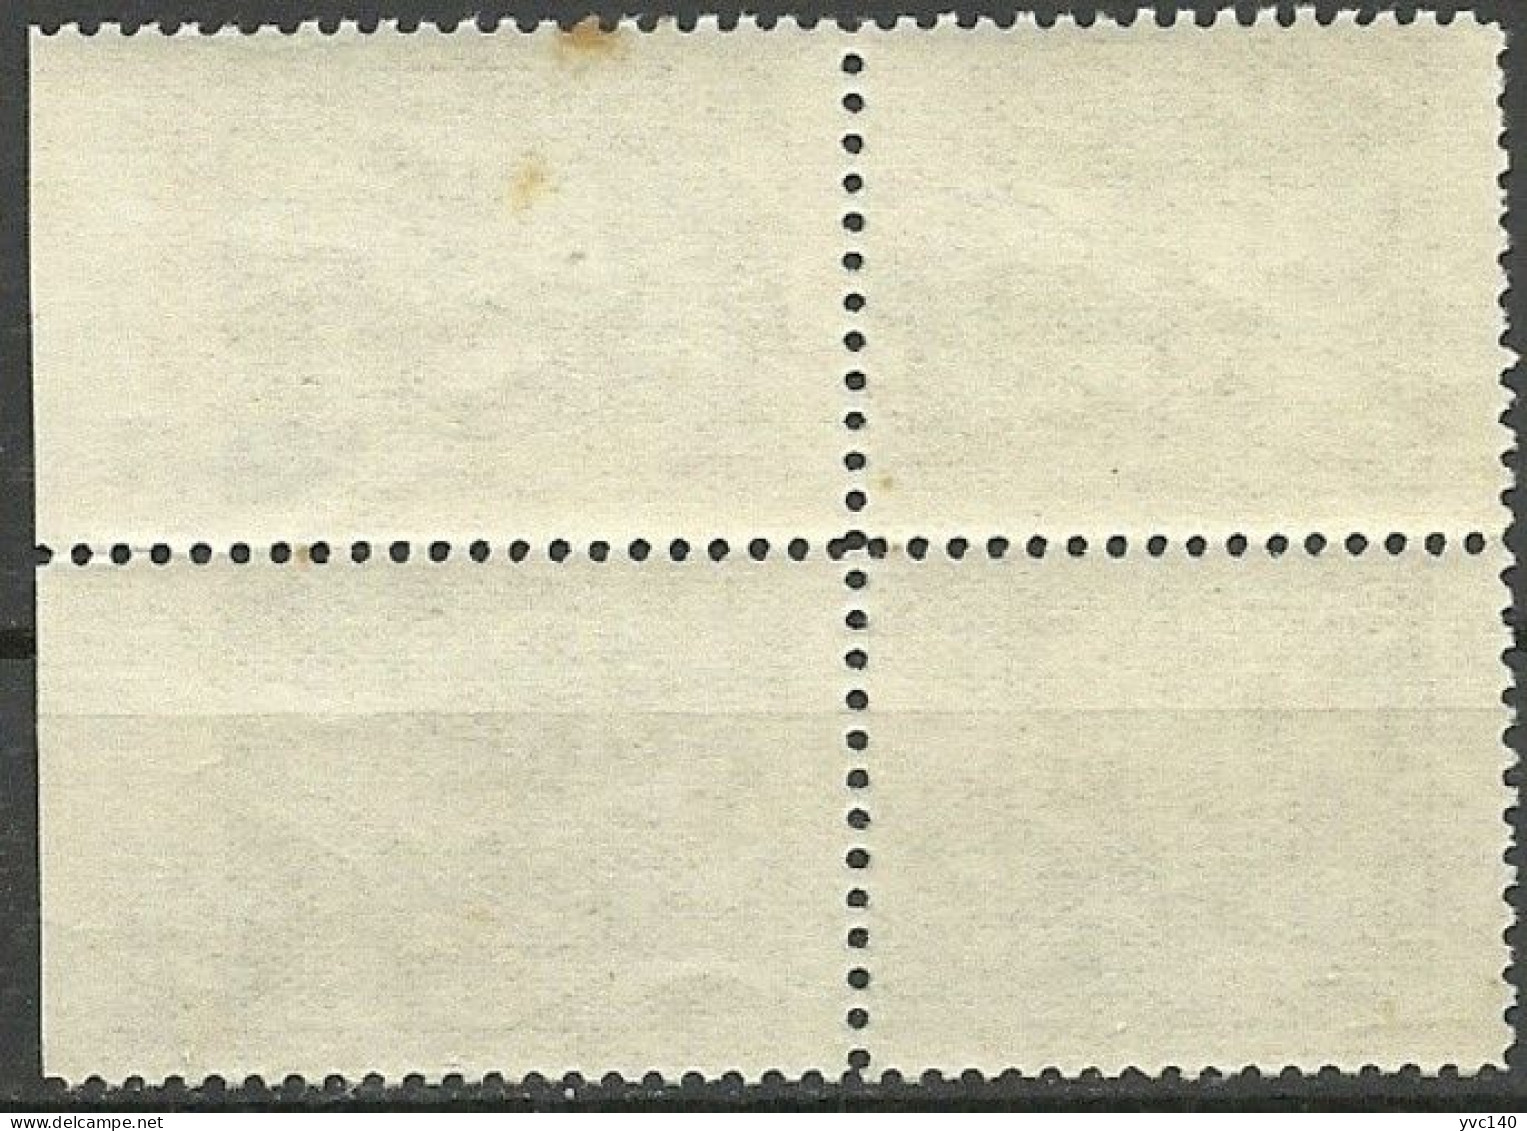 Turkey; 1959 Pictorial Postage Stamp 1 K. ERROR "Imperf. Edge" - Ungebraucht